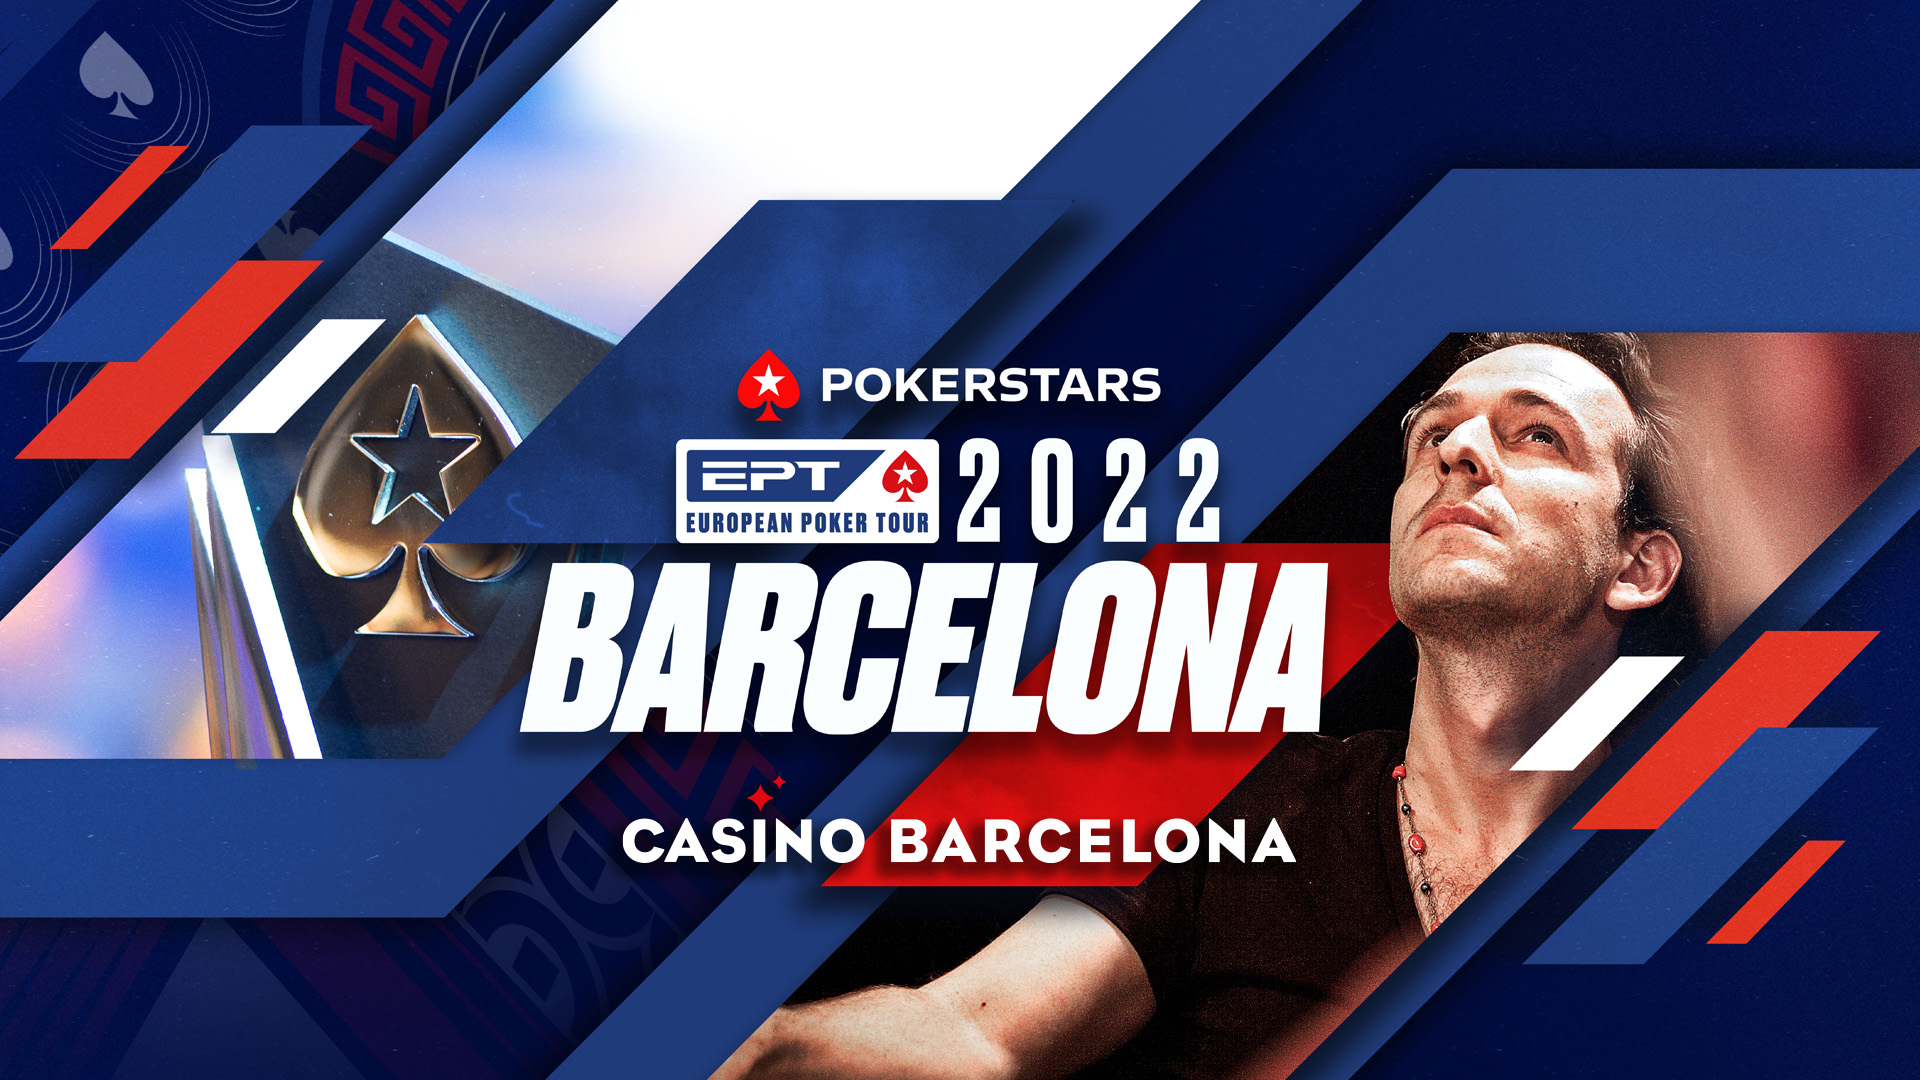 El European Poker Tour vuelve a Casino Barcelona